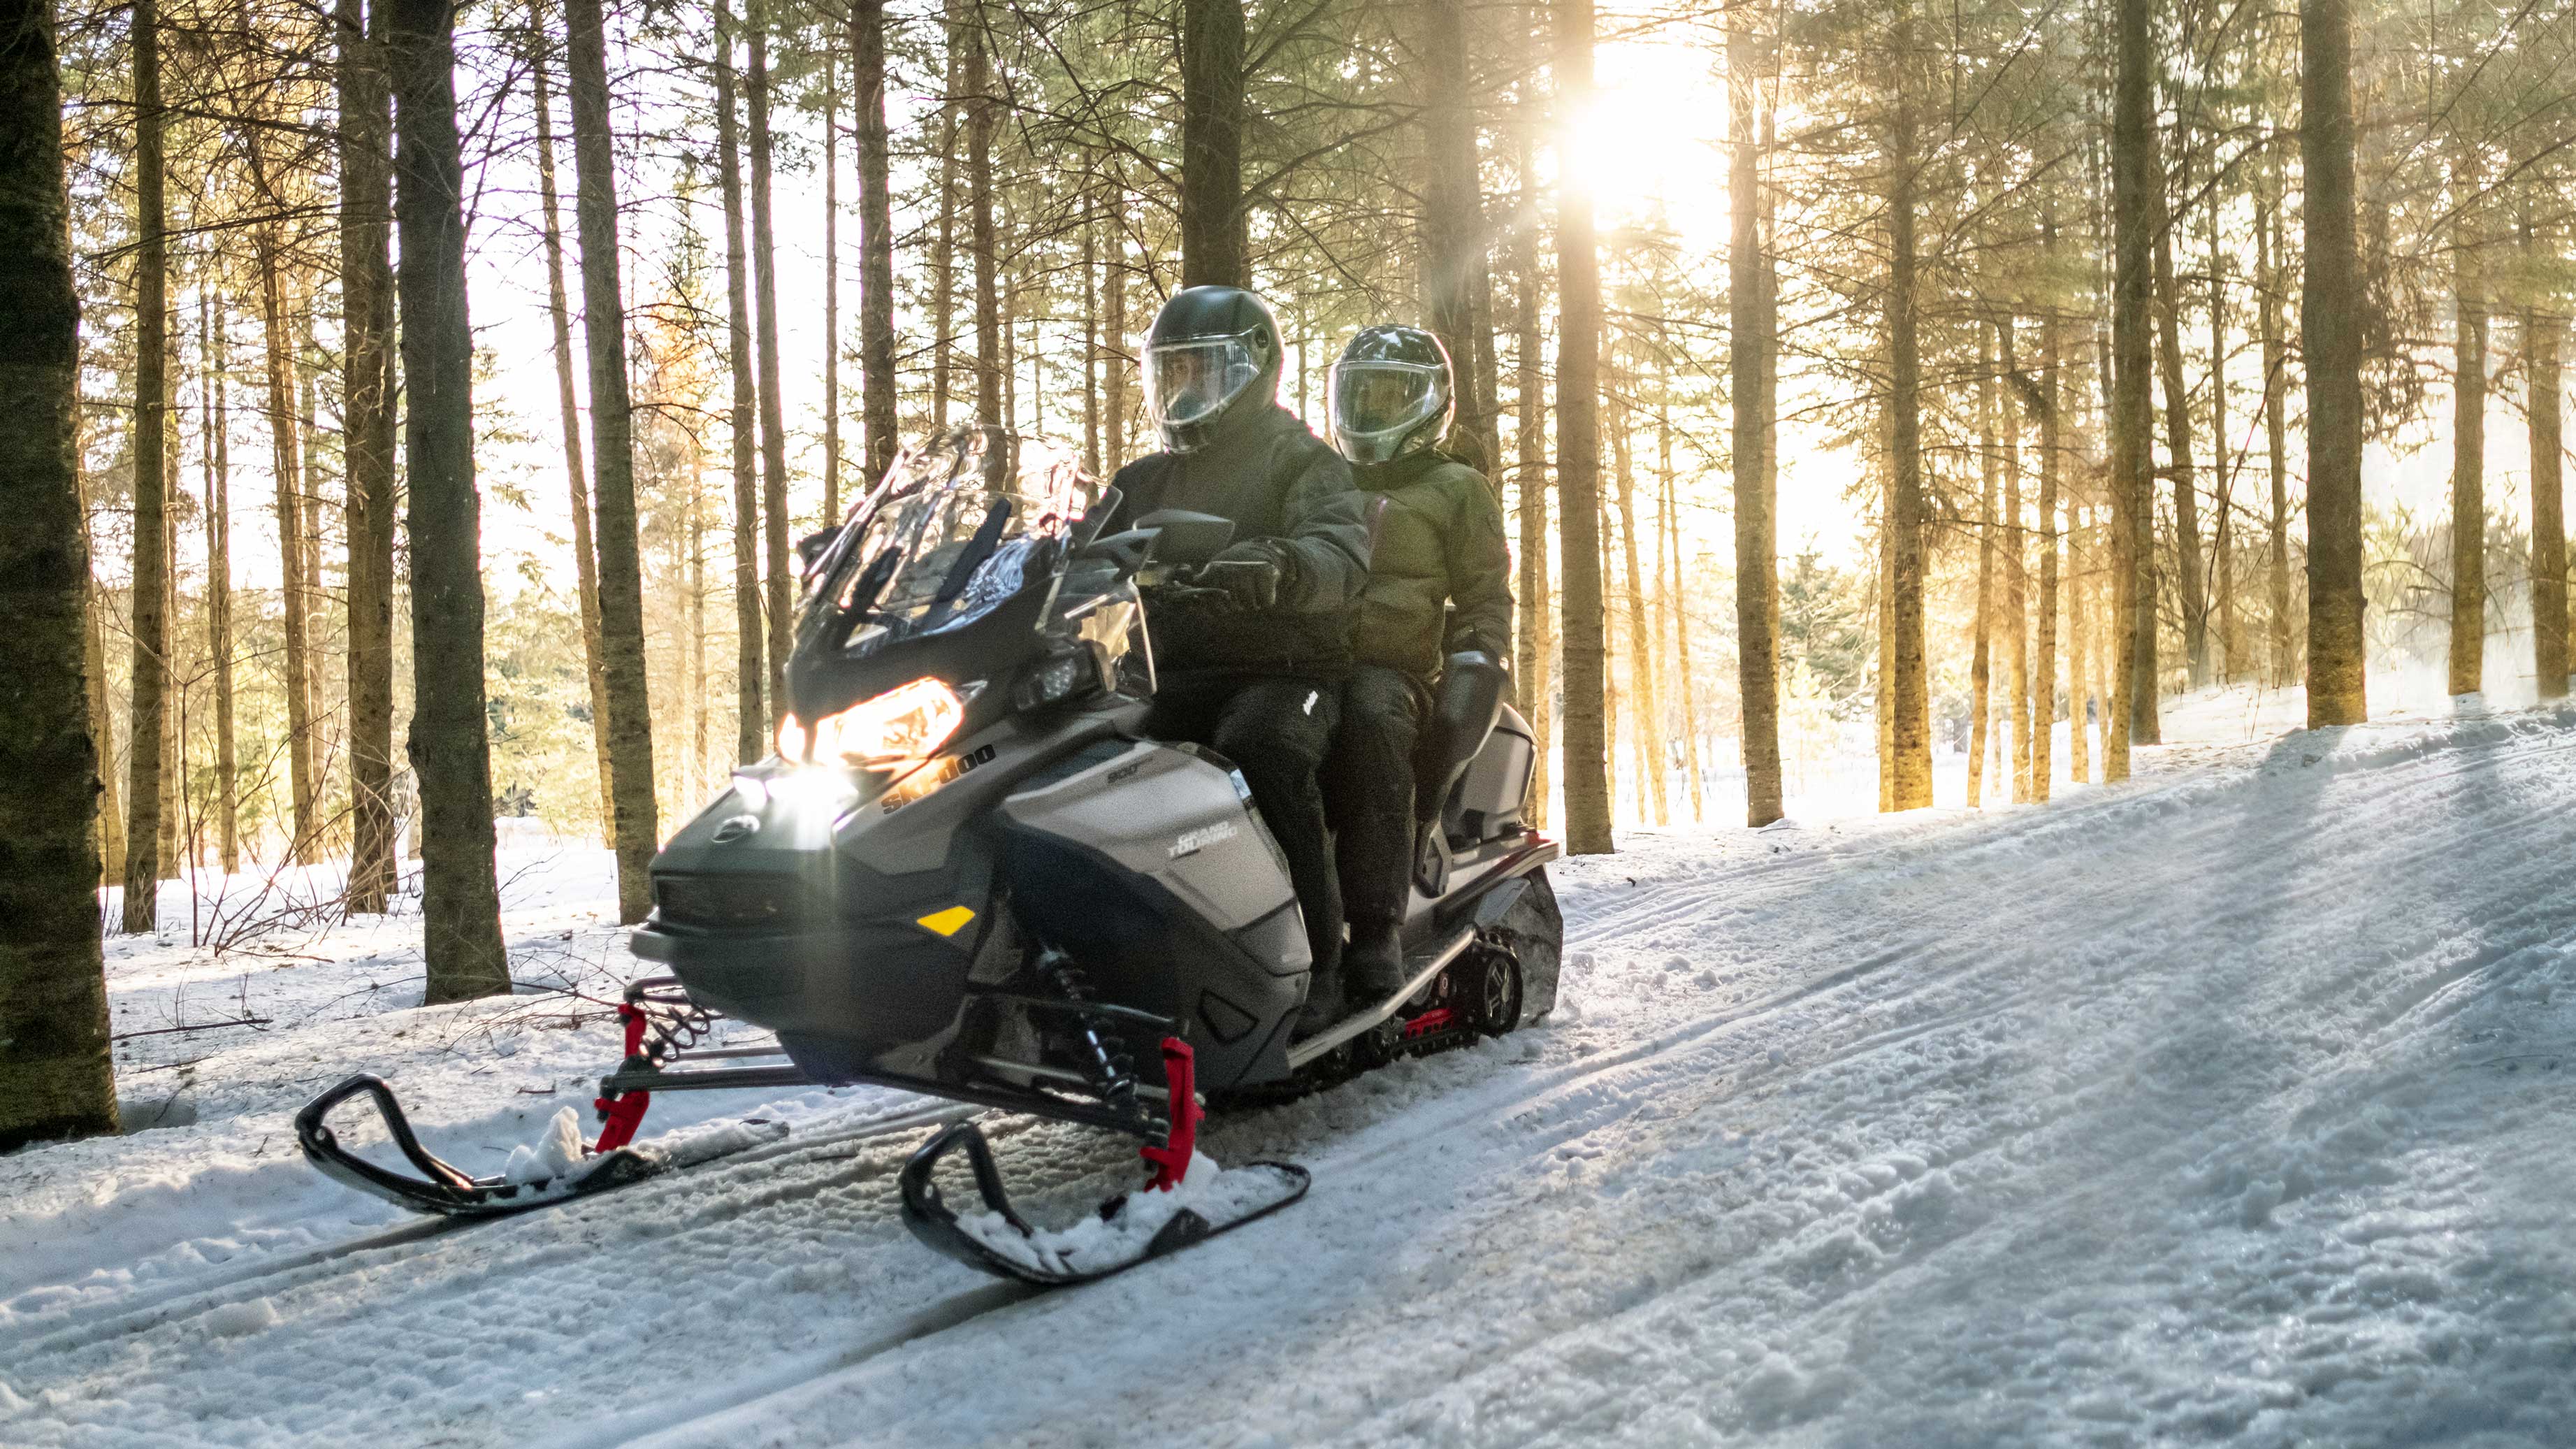 Couple riding Ski-Doo Grand Touring snowmobile